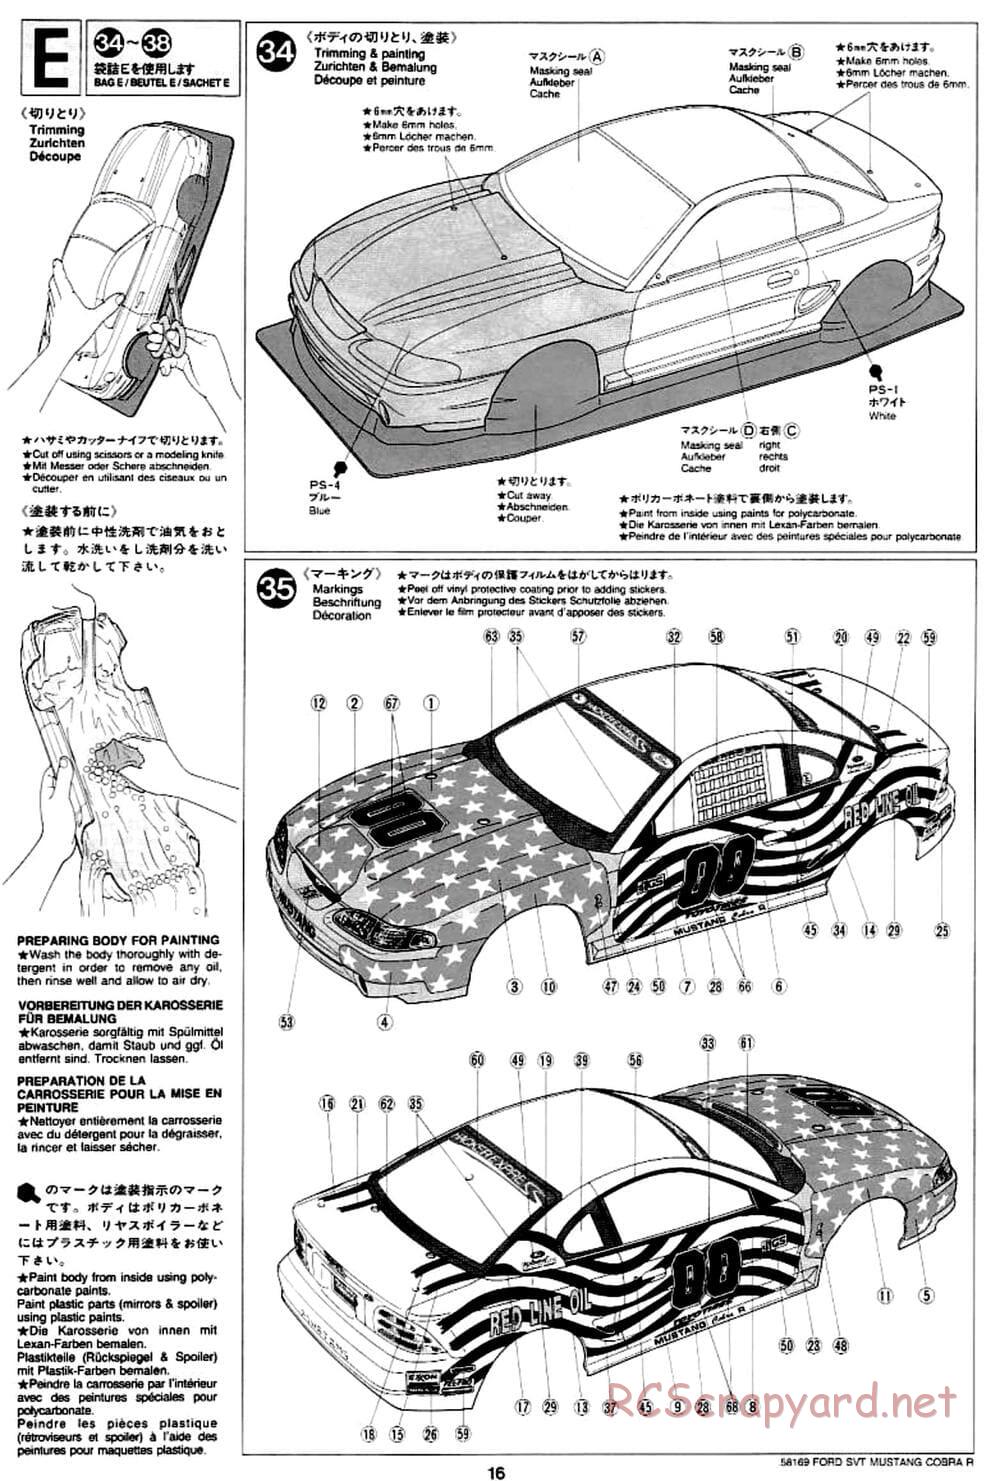 Tamiya - Ford SVT Mustang Cobra-R - TA-02 Chassis - Manual - Page 16